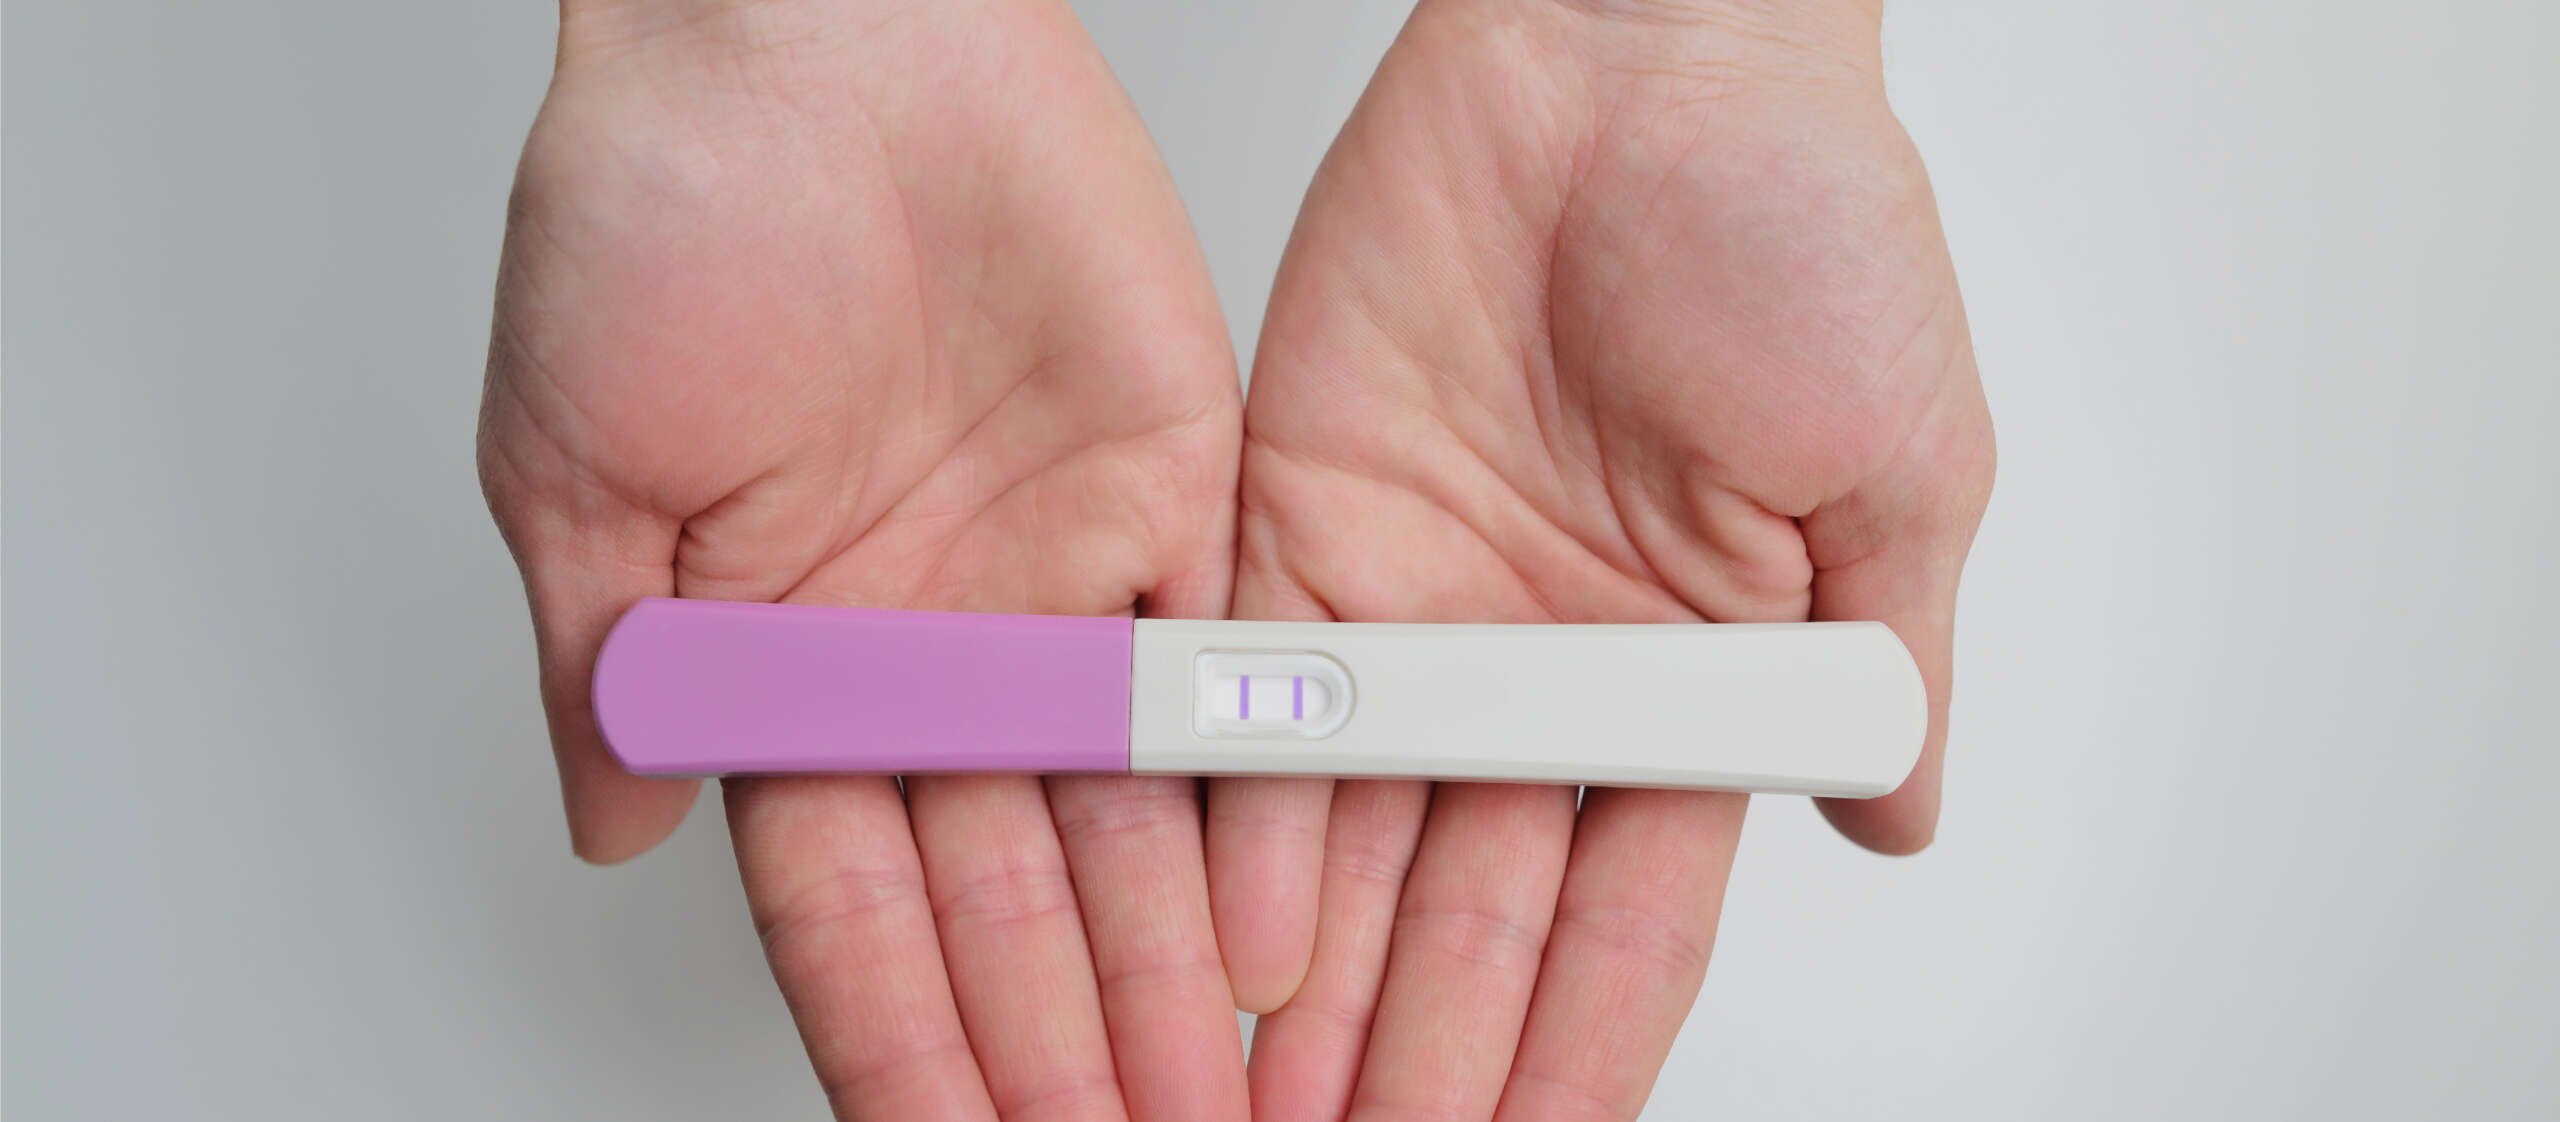 El Paso Del Tiempo Y Su Impacto En La Fertilidad De La Mujer Citmer Medicina Reproductiva 6454